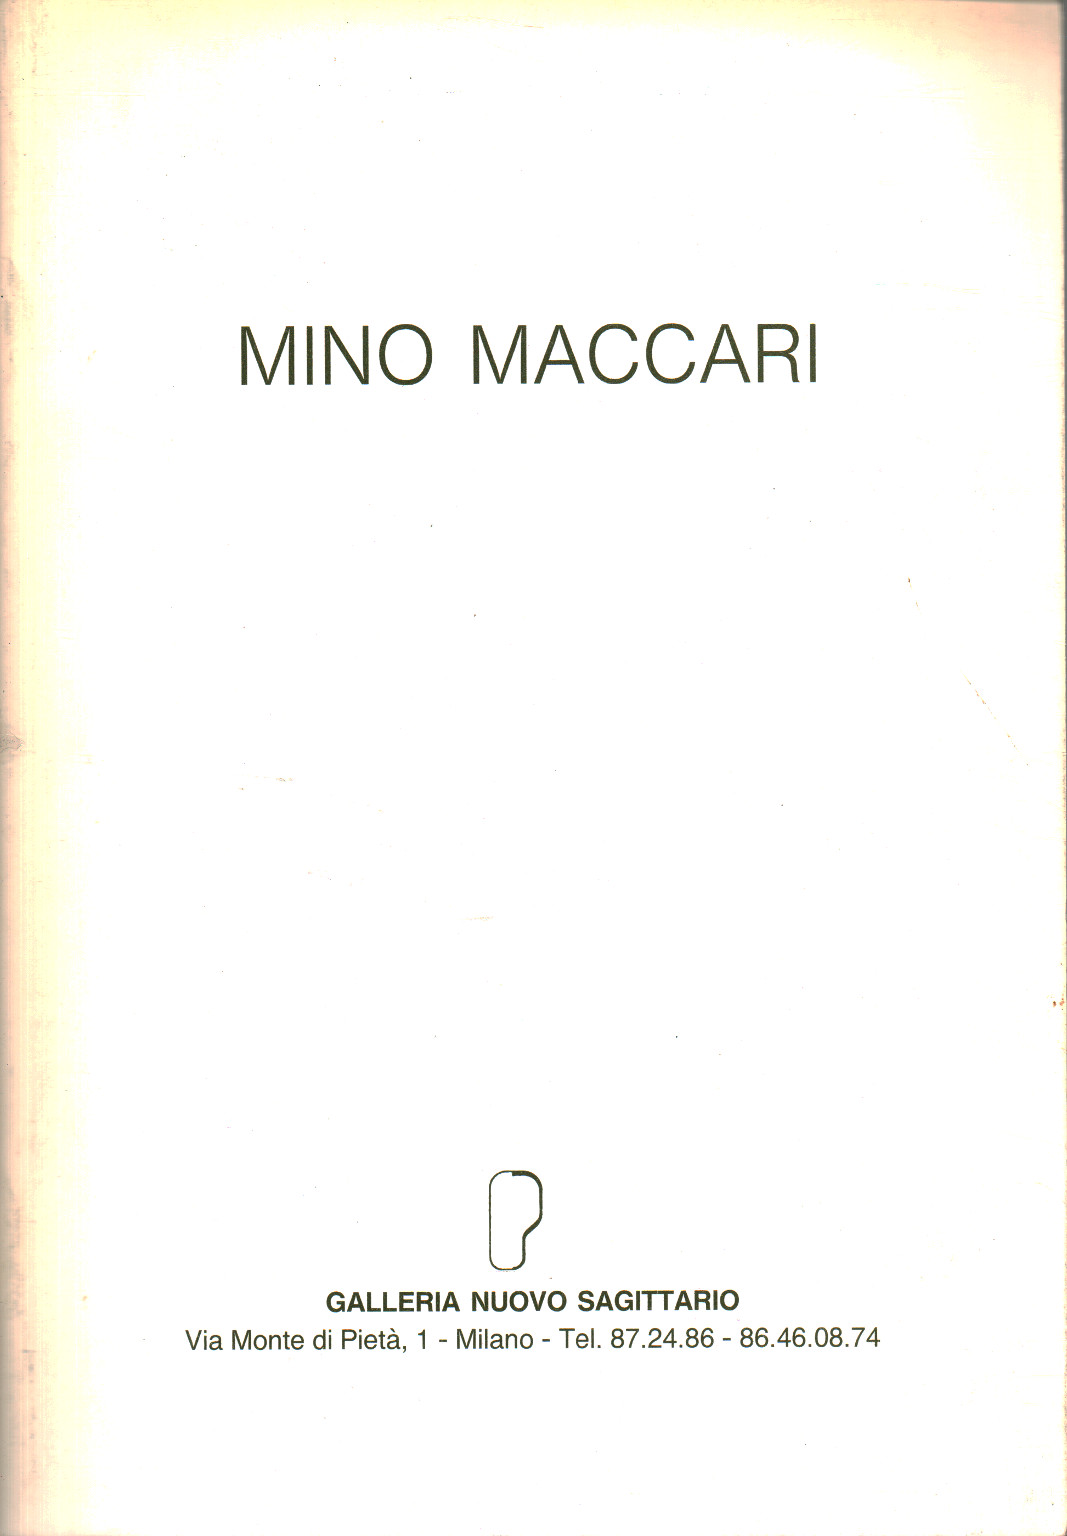 Opere scelte di Mino Maccari dal 1948 al 1988, Raffaele De Grada